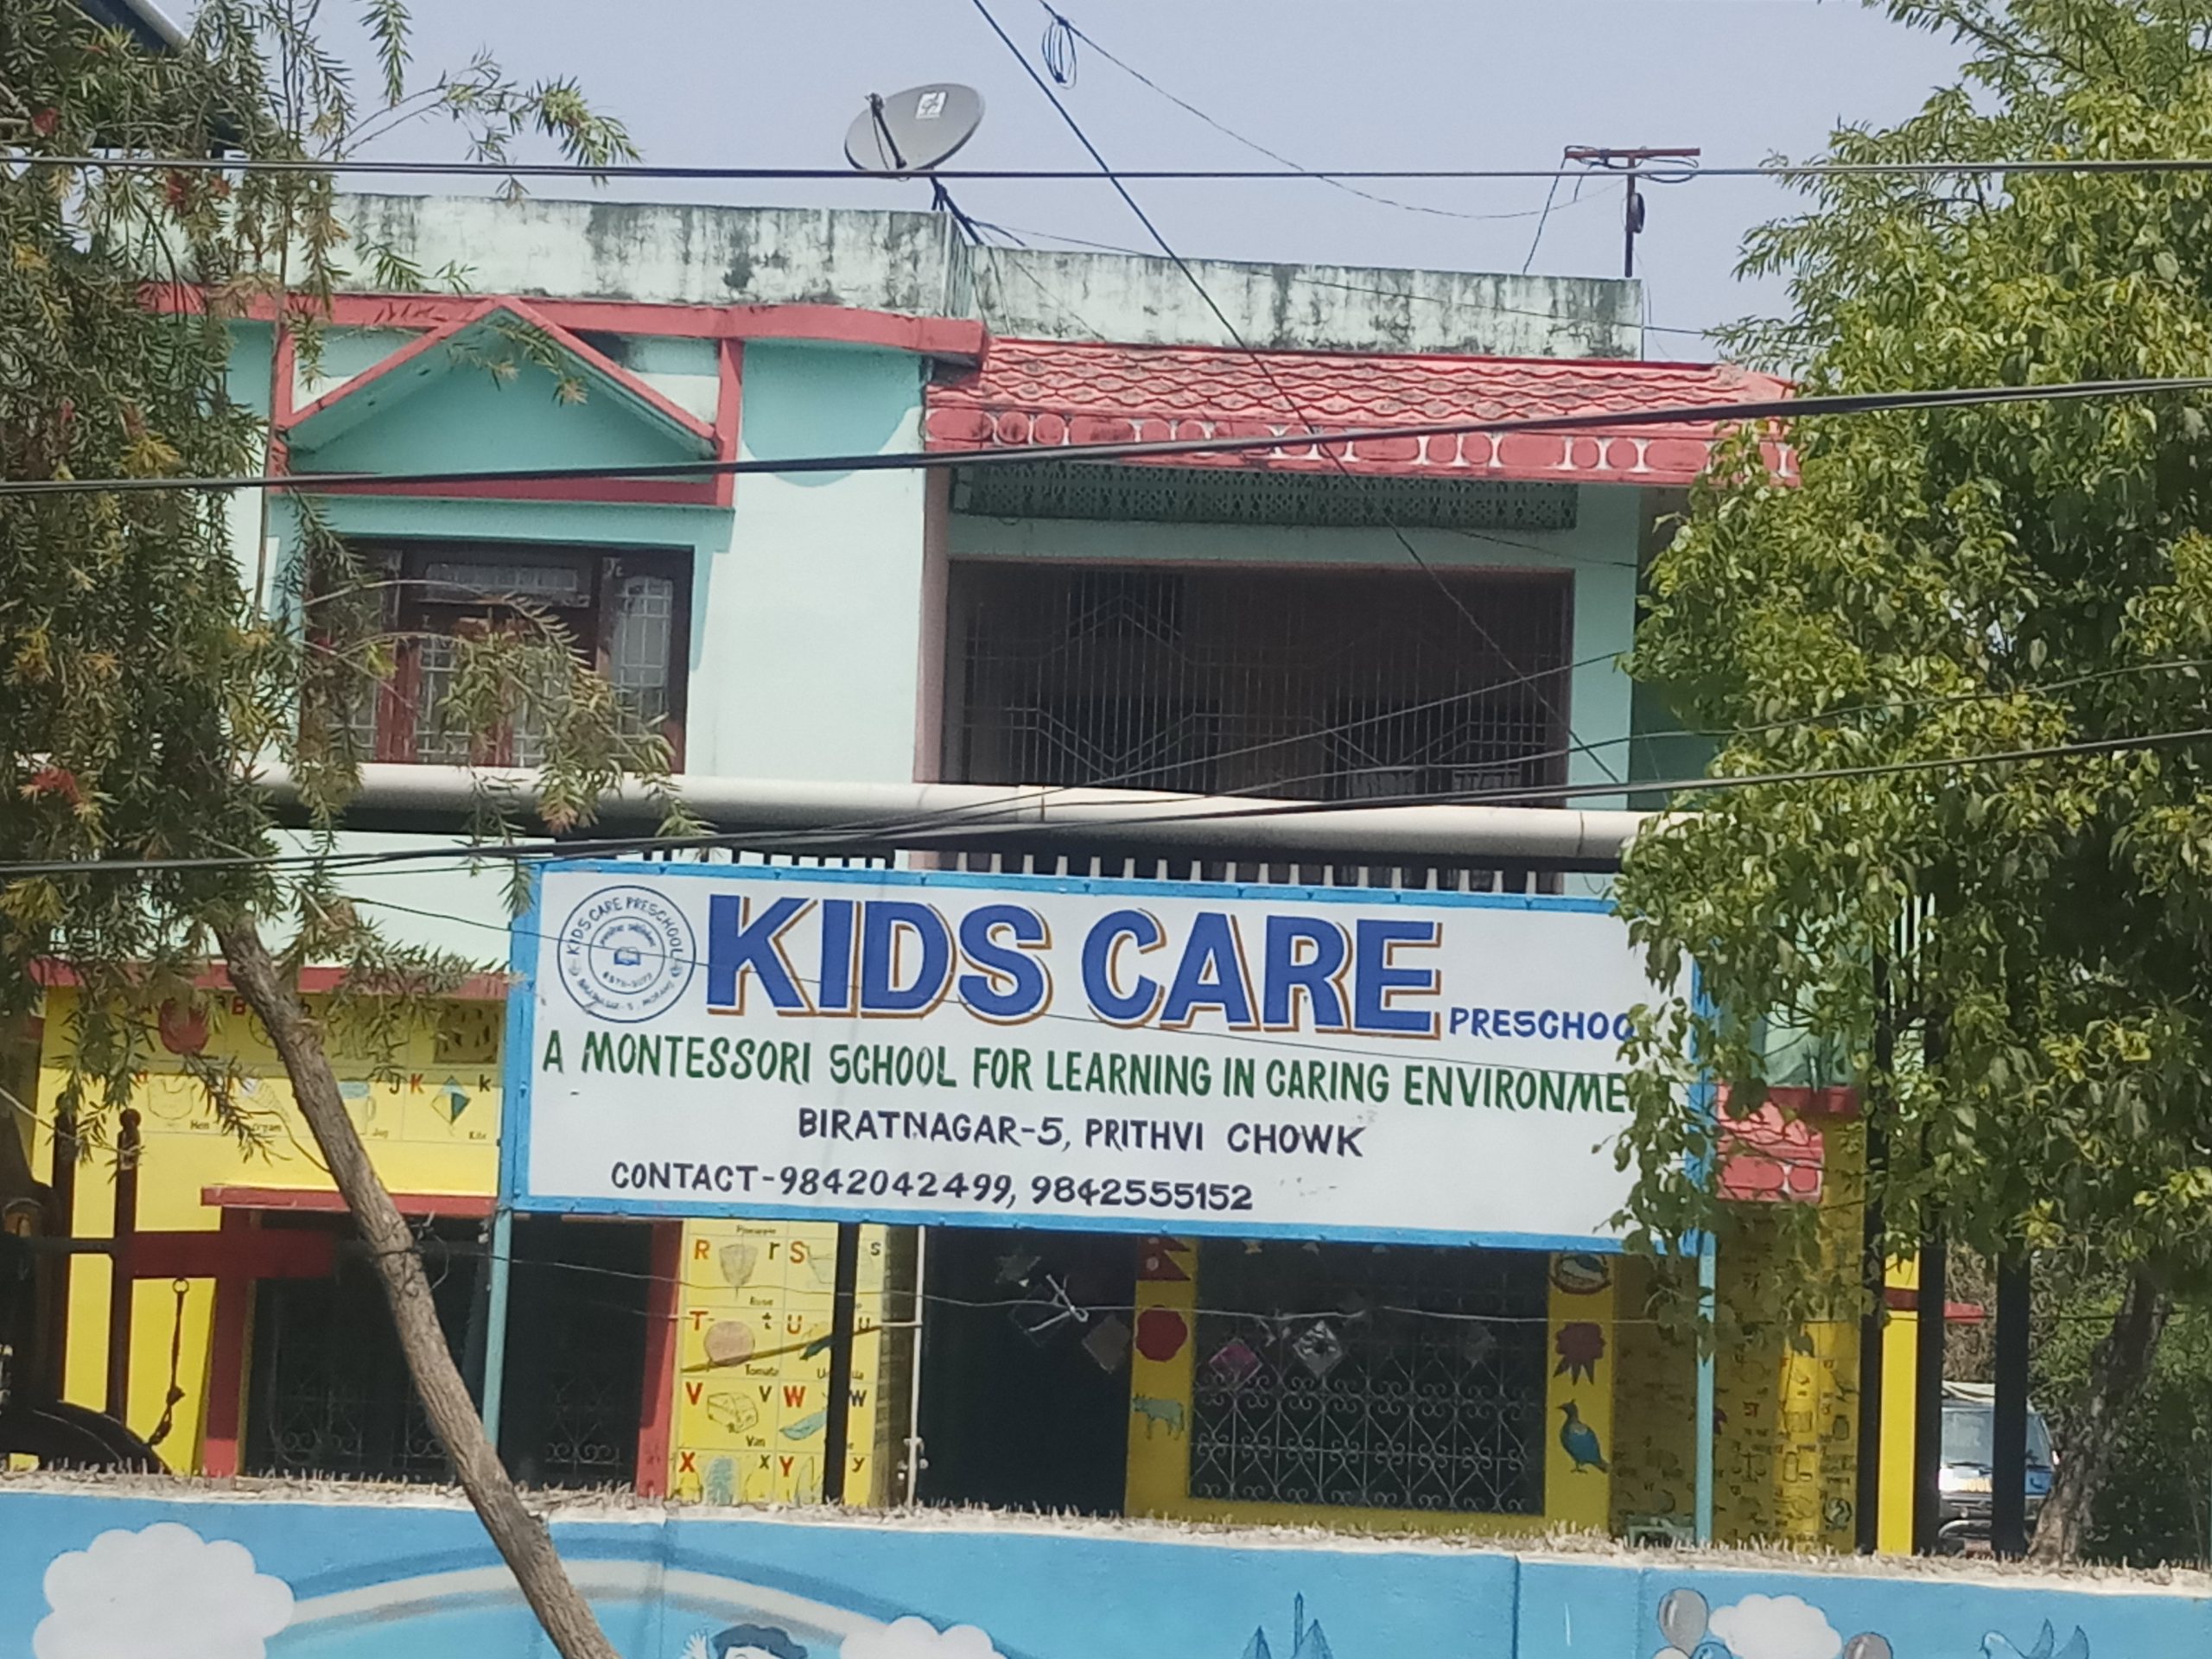 Kids care